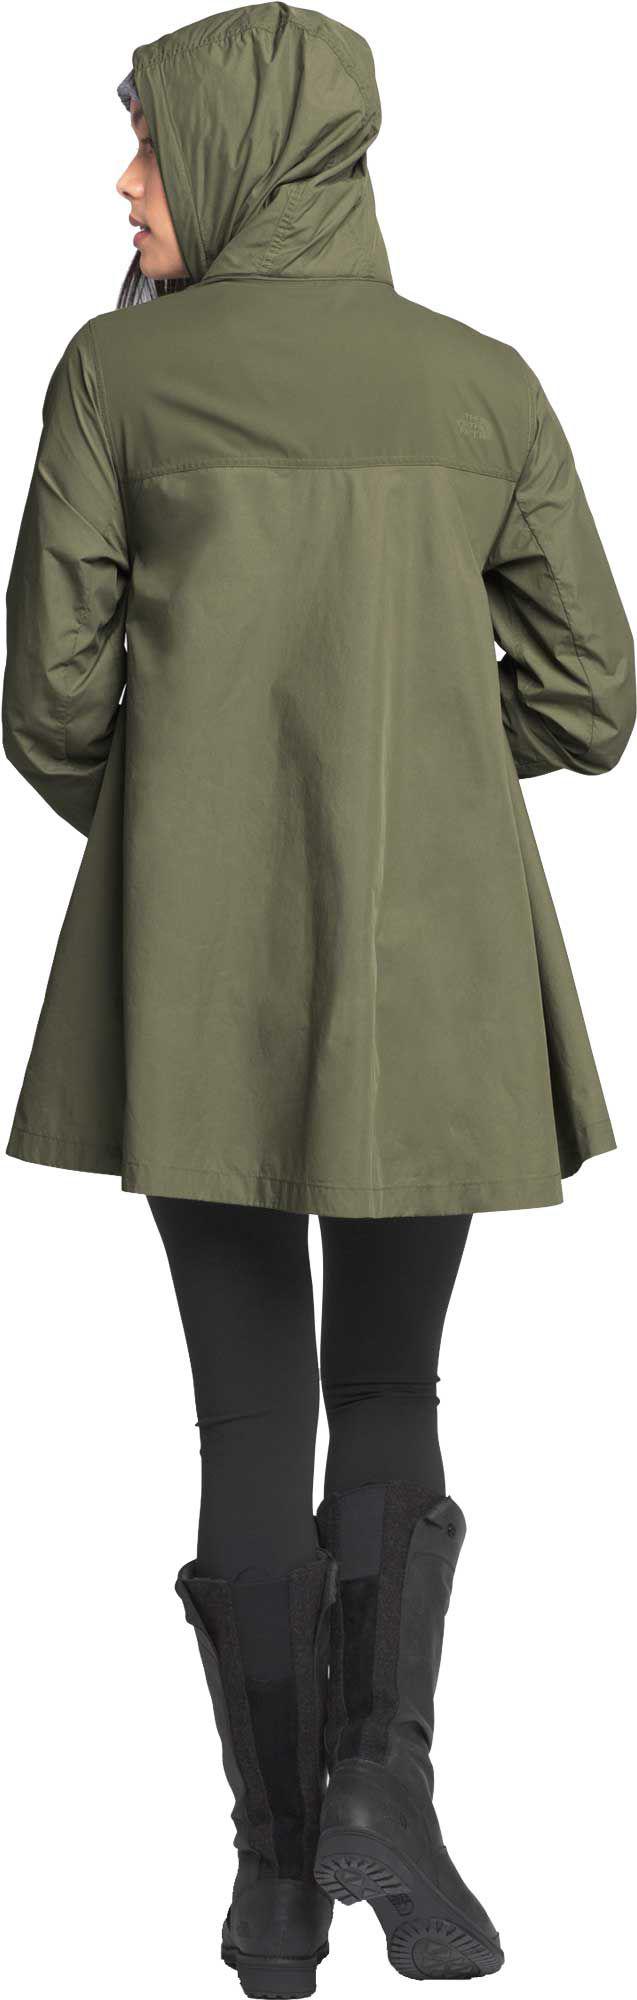 women's flychute jacket